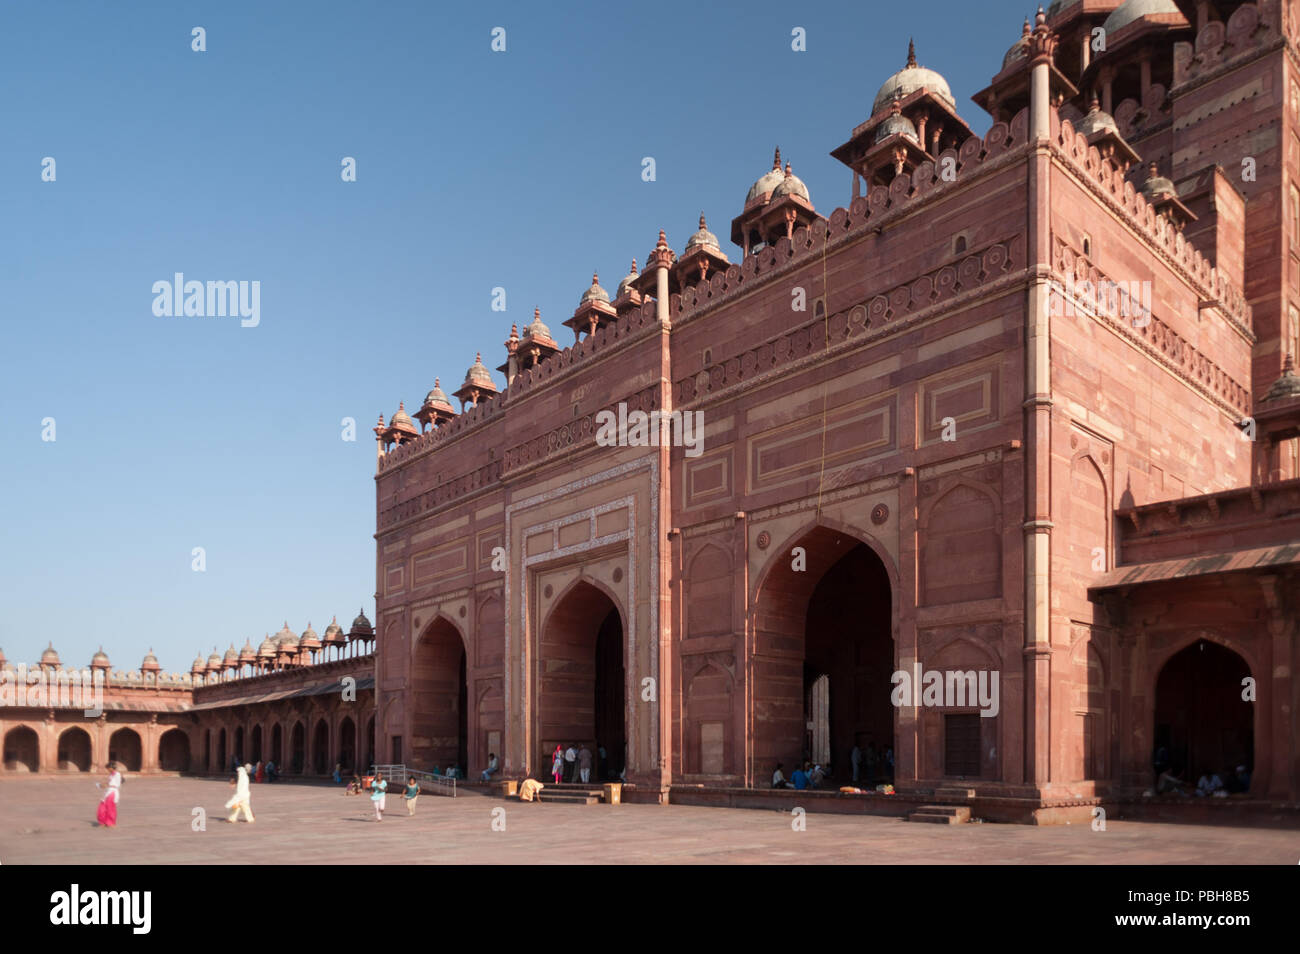 Old town of Fatehpur Sikri. Agra, Uttar Pradesh, India, Asia Stock Photo